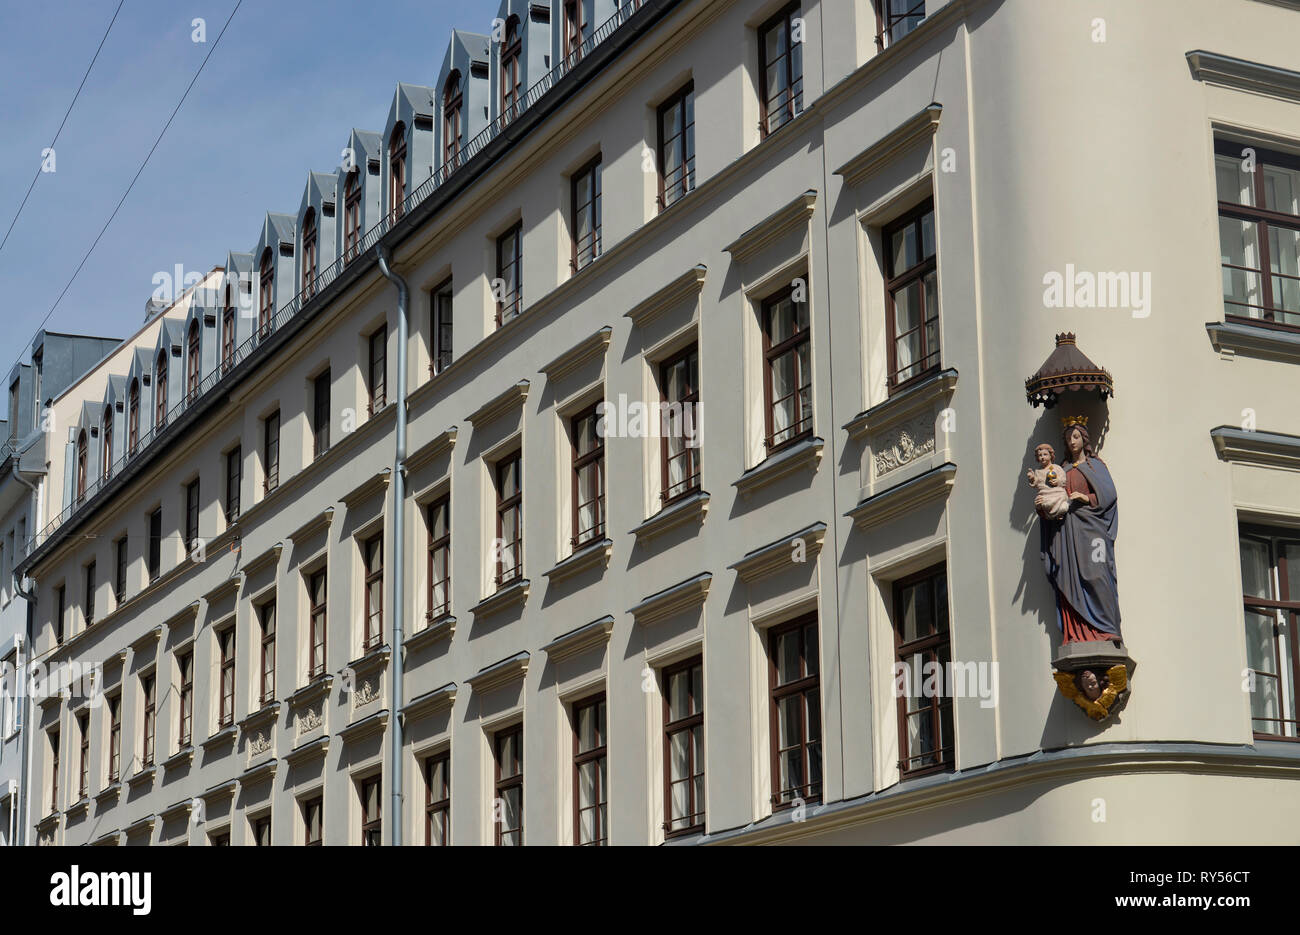 Damenstift St. Anna, Damenstiftstrasse, Muenchen, Bayern, Deutschland Stock Photo